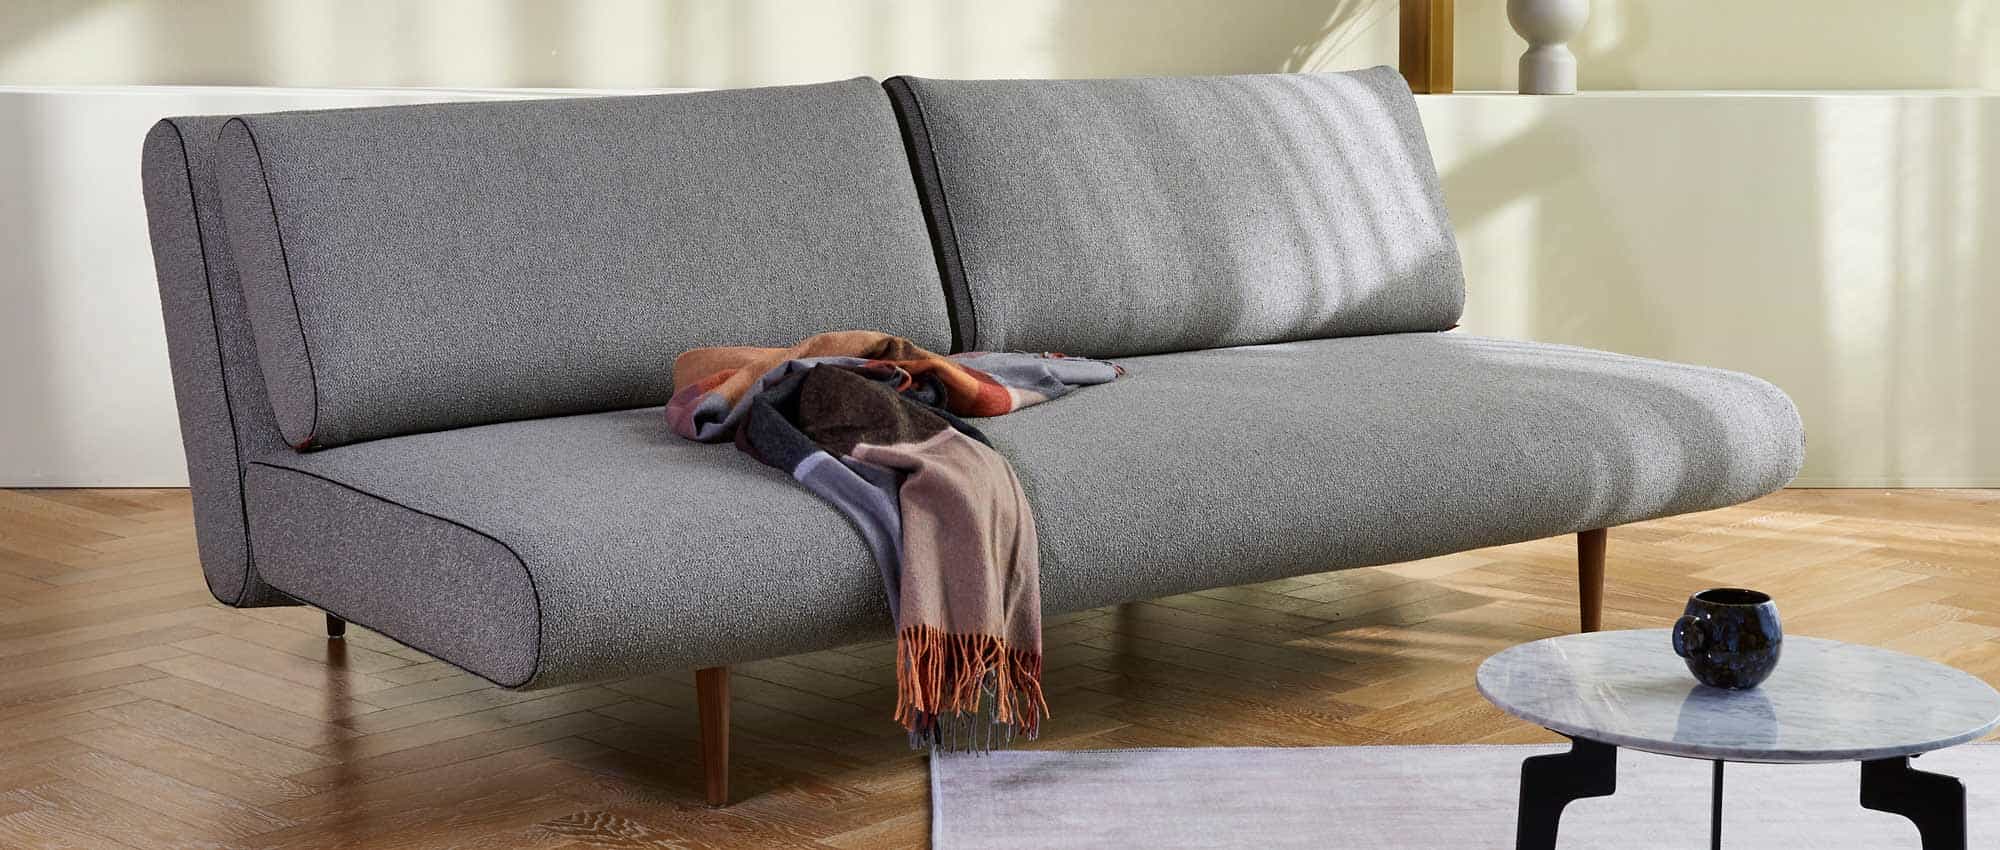 Schlafsofa UNFURL LOUNGER grau von Innovation mit dunklen Holzfüßen, Lounge Sofa mit verstellbarer Rückenlehne - 140x200cm